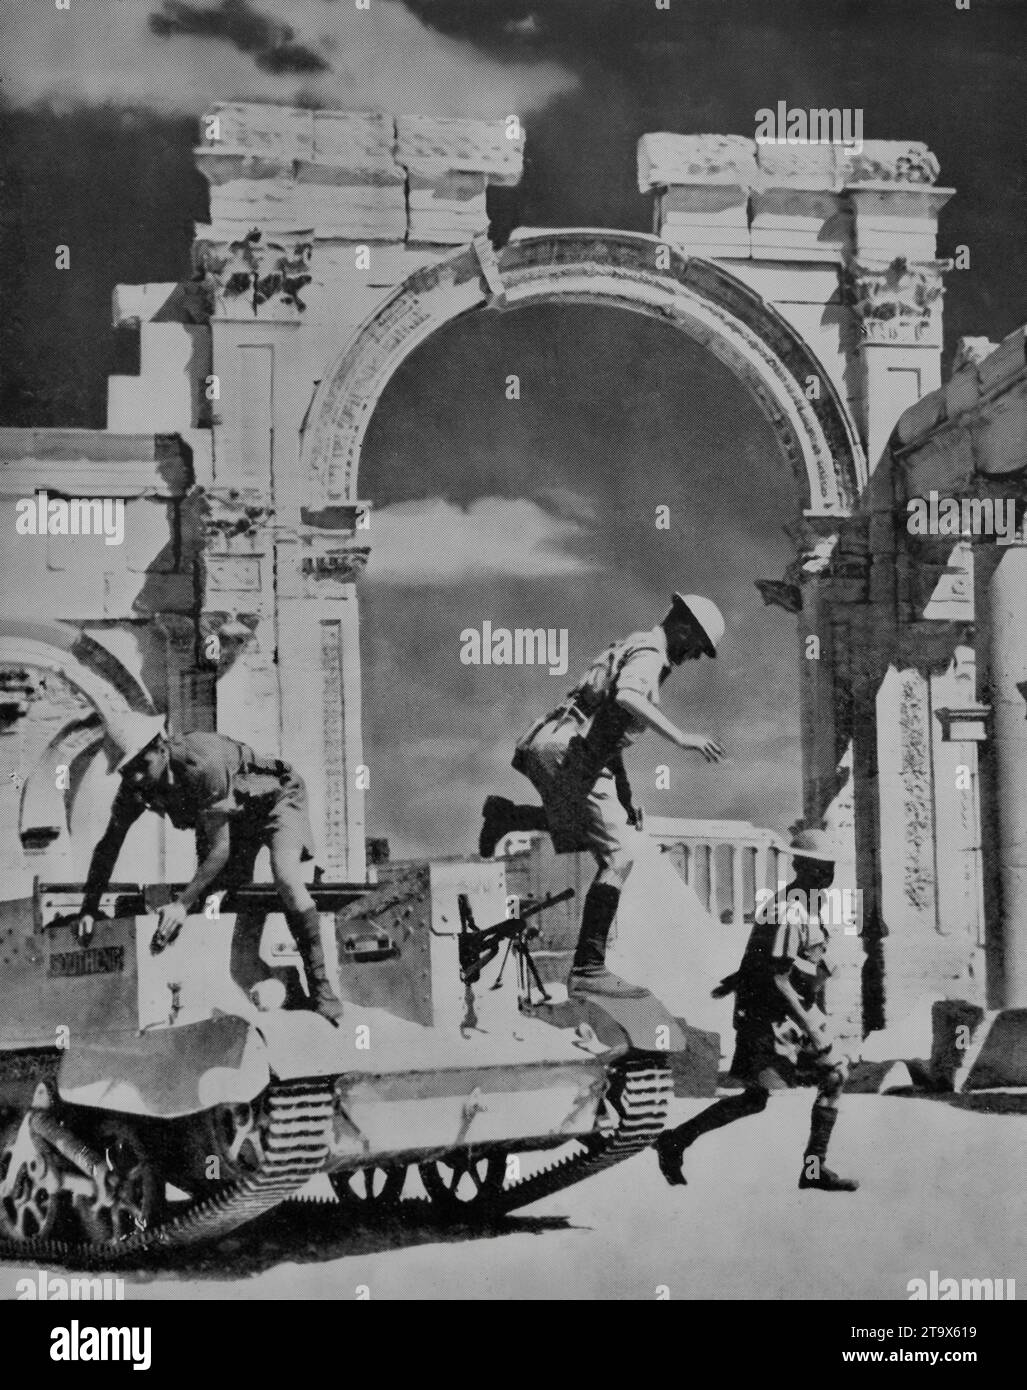 Un porte-canon bren pendant la Seconde Guerre mondiale avec des troupes françaises libres et impériales s'arrête devant les ruines d'une ancienne colonnade romaine dans la ville de Palmyre en Syrie pour faire face aux poches de résistance. La ville capturée le 3 juillet 1941, était importante en raison de sa proximité avec un oléoduc vers Tripoli. Banque D'Images